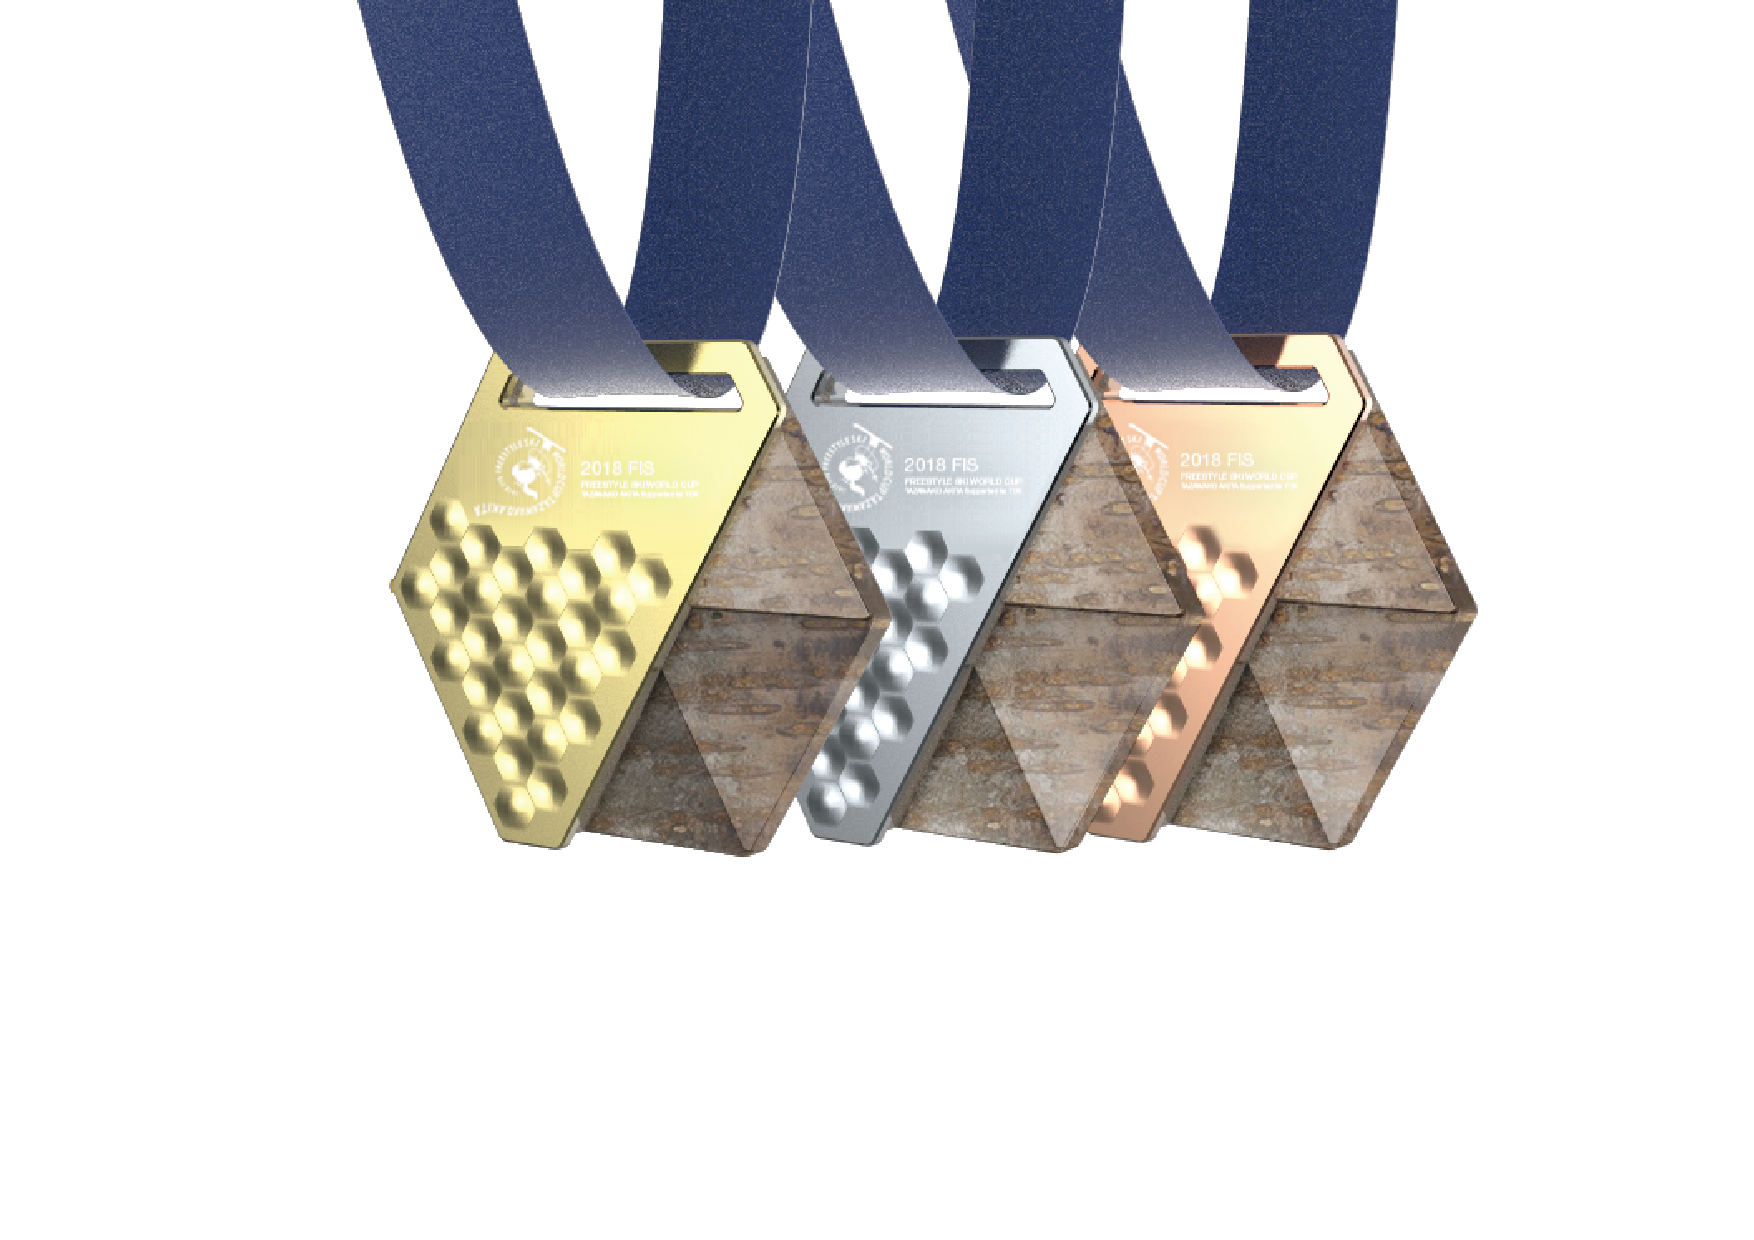 2019FIS リースタイルスキーワールドカップ 秋田たざわ湖大会 表彰メダル